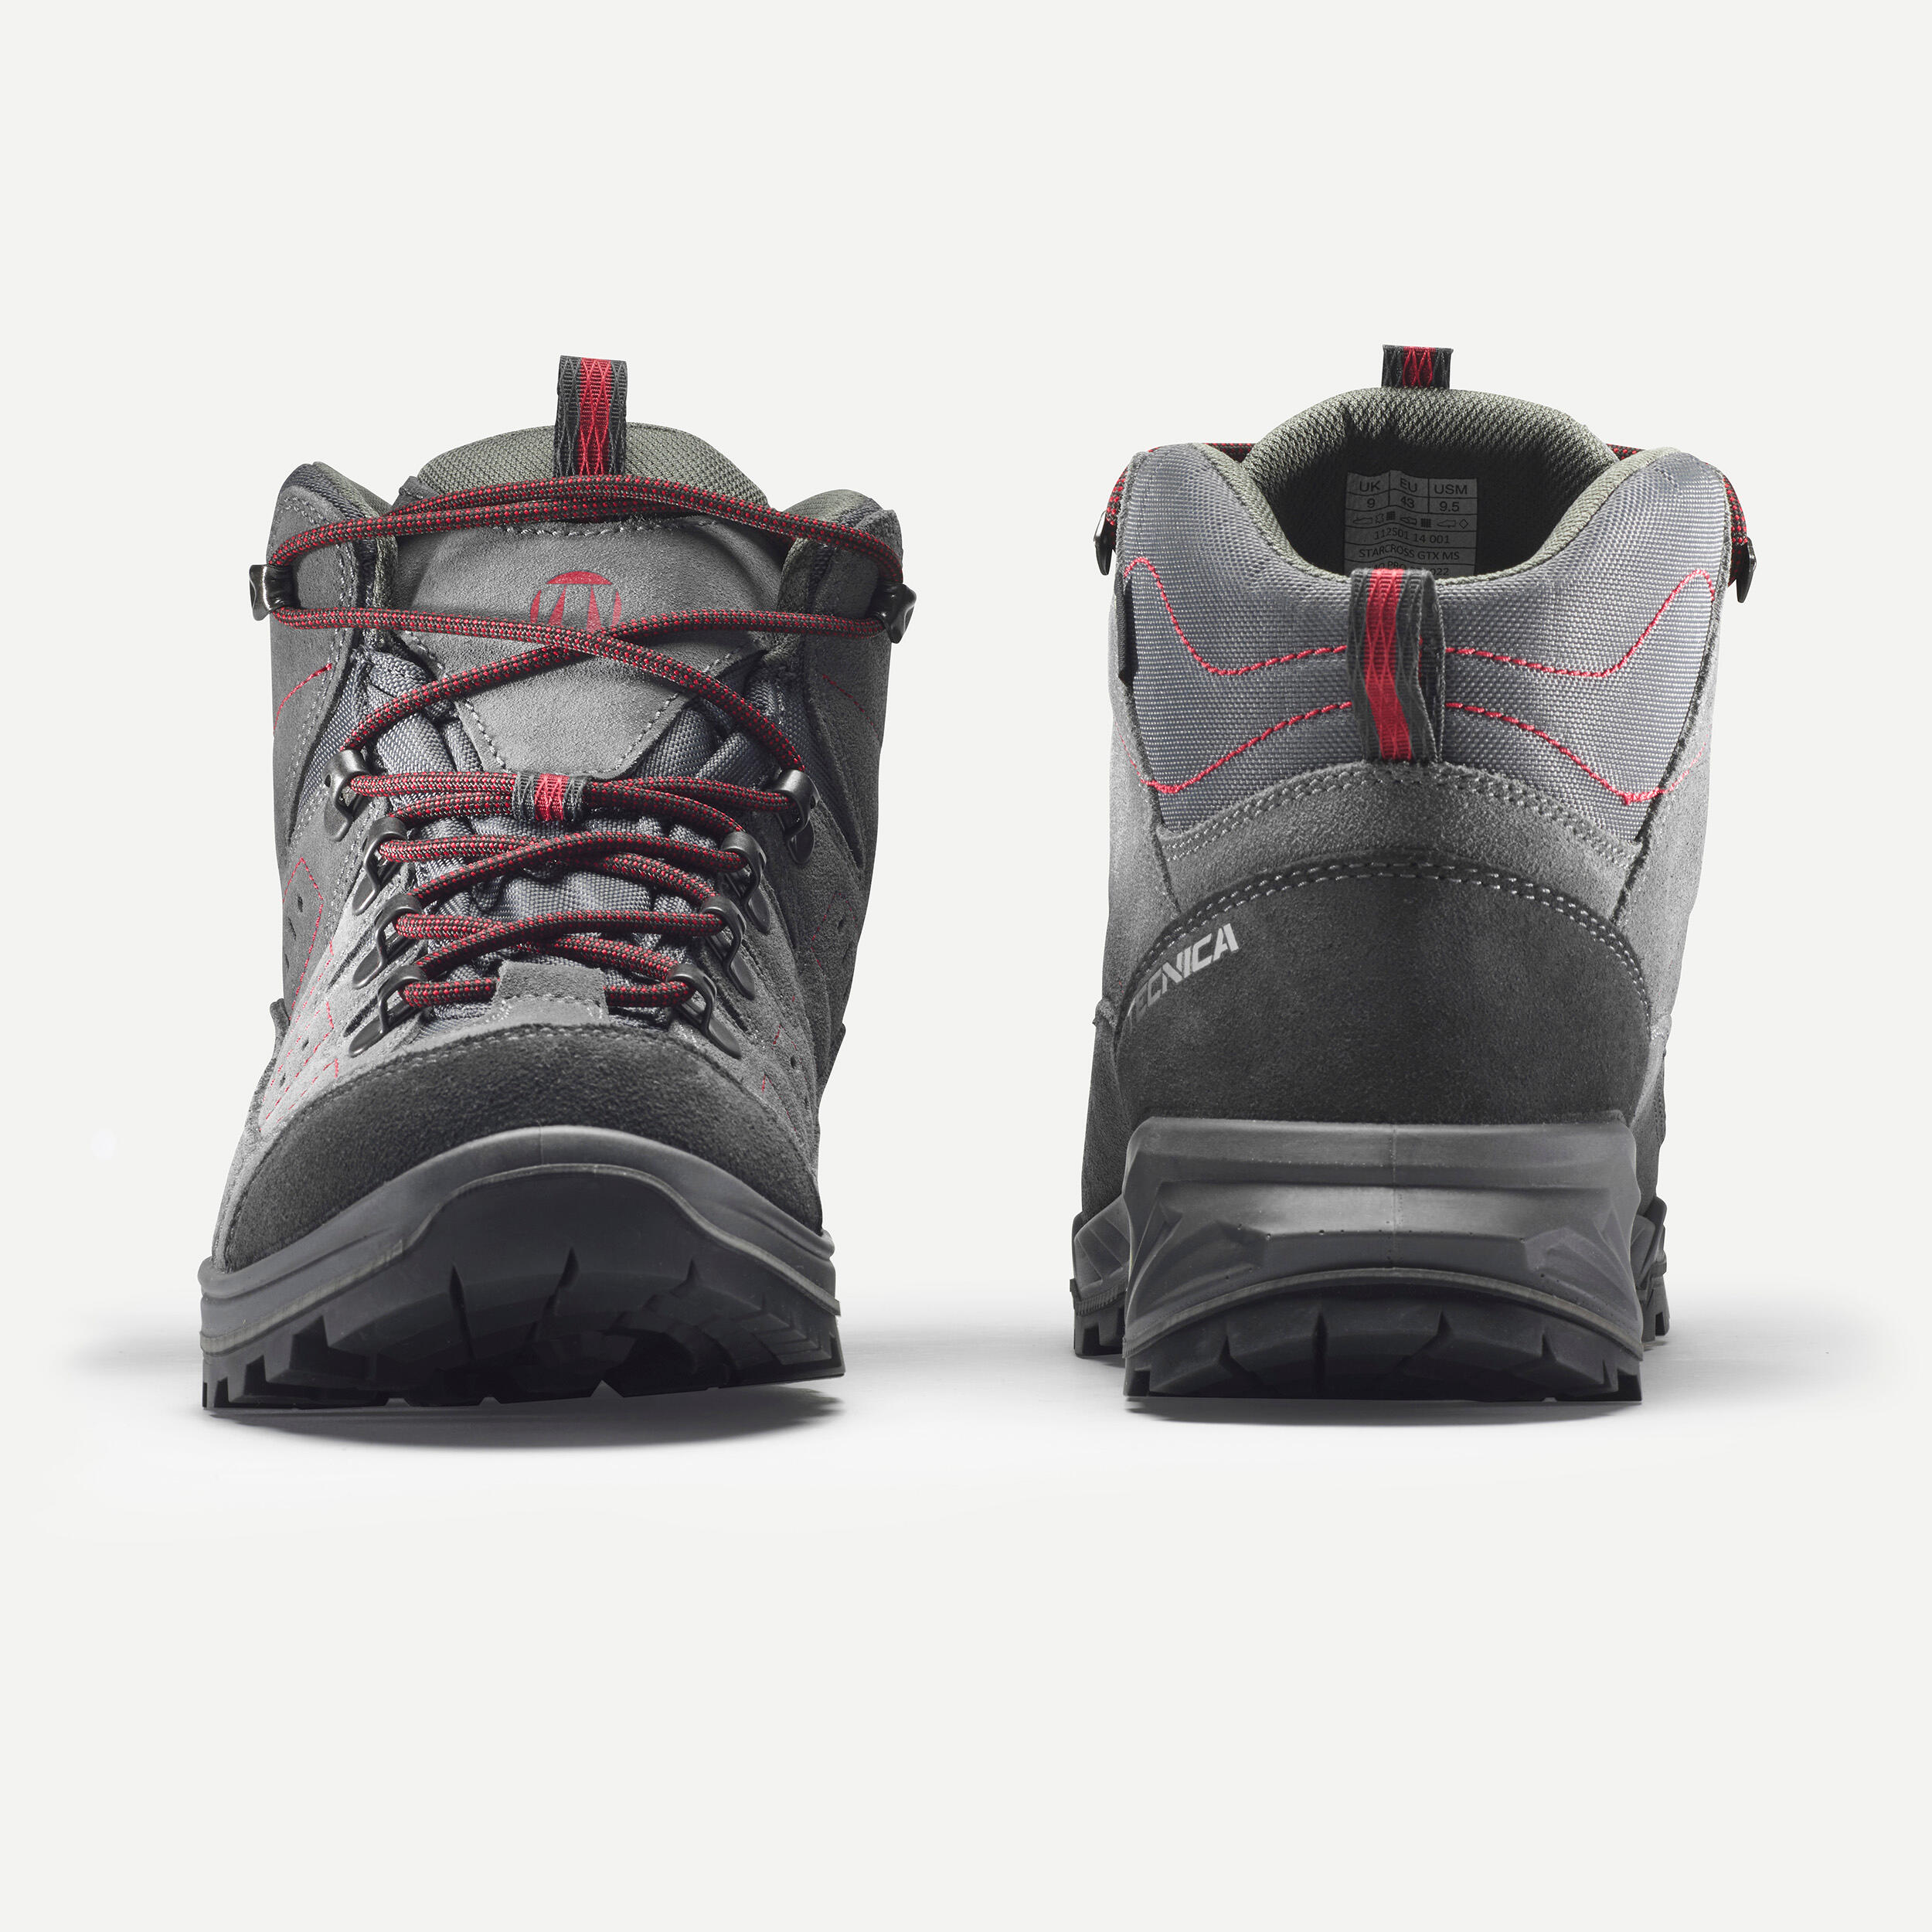 Men’s Waterproof Boots - VIBRAM - GTX - TECNICA STARCROSS Grey 2/6